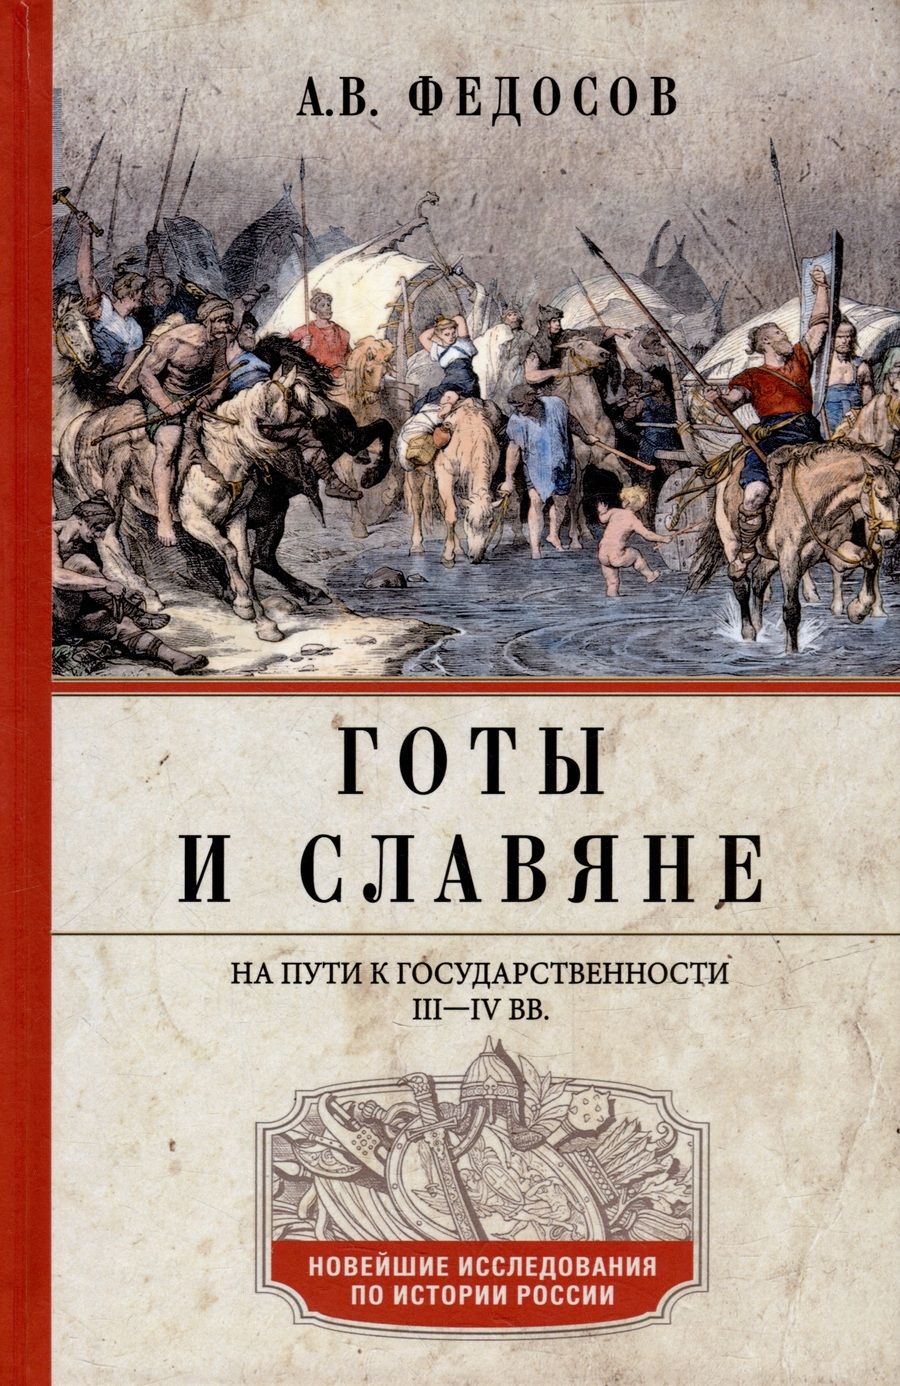 Обложка книги "Федосов: Готы и славяне. На пути к государственности. III–IV вв."